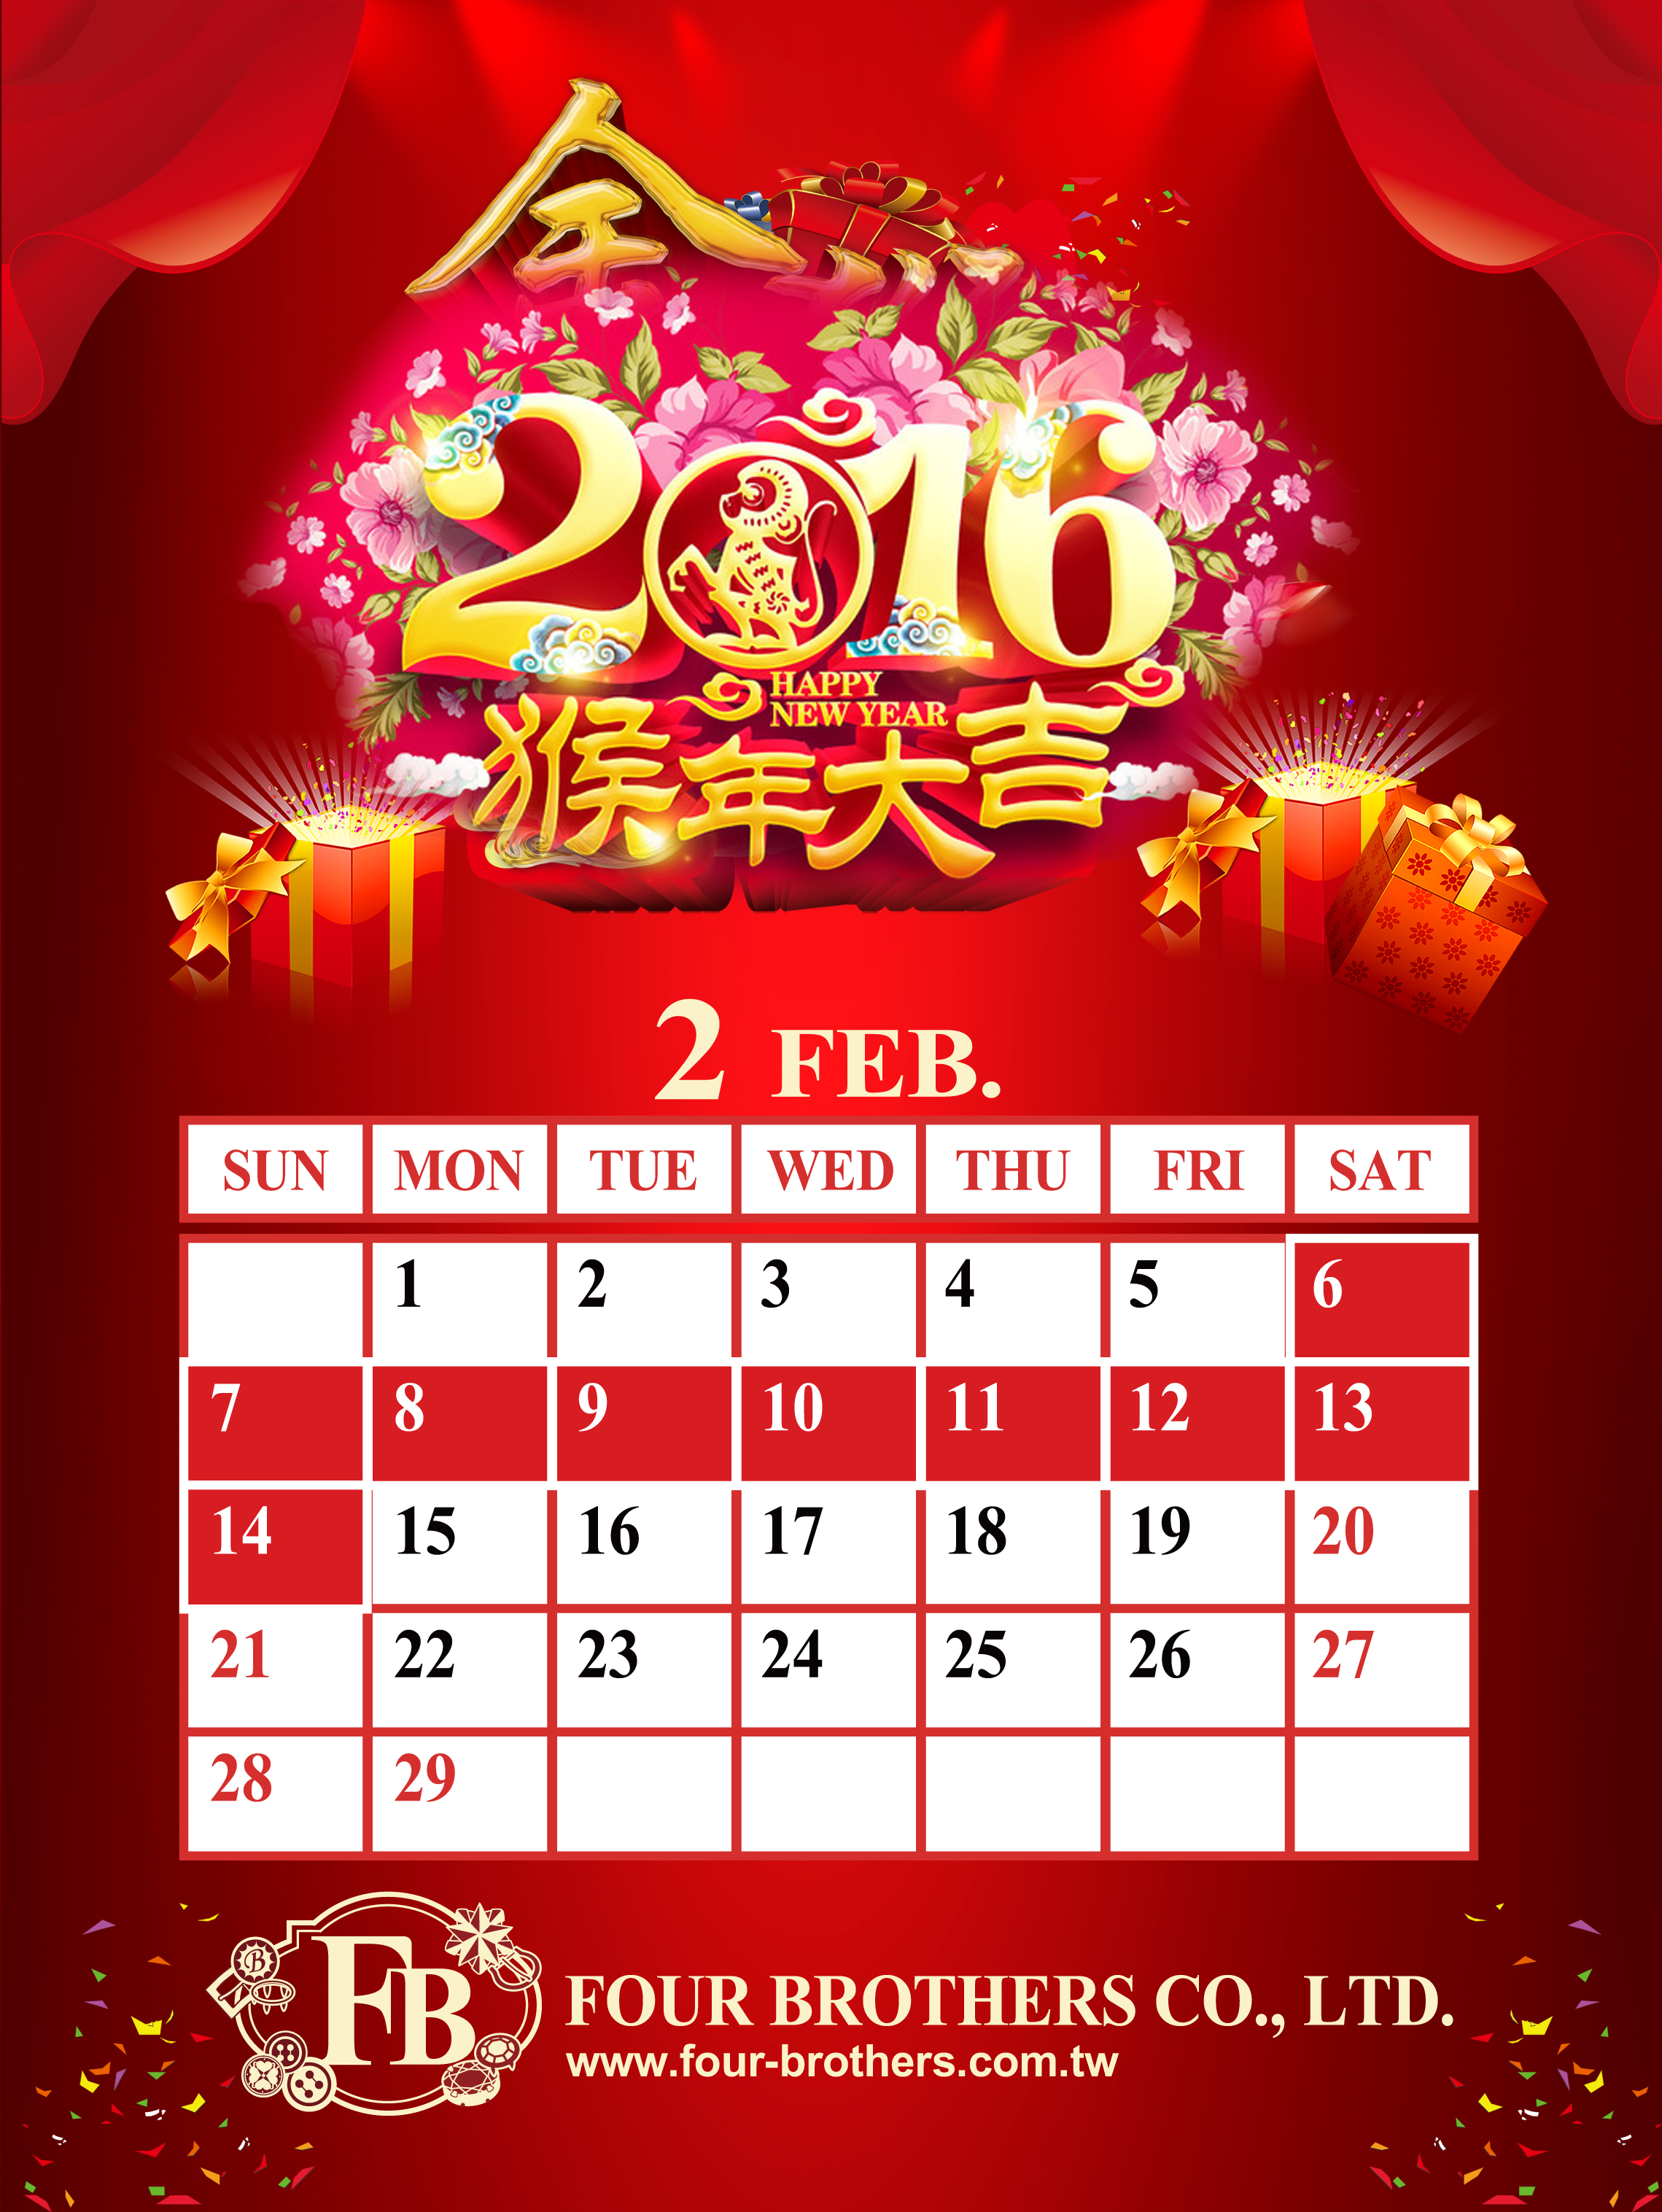 Four Brothers Chinesisches Neujahrsferien-Hinweis